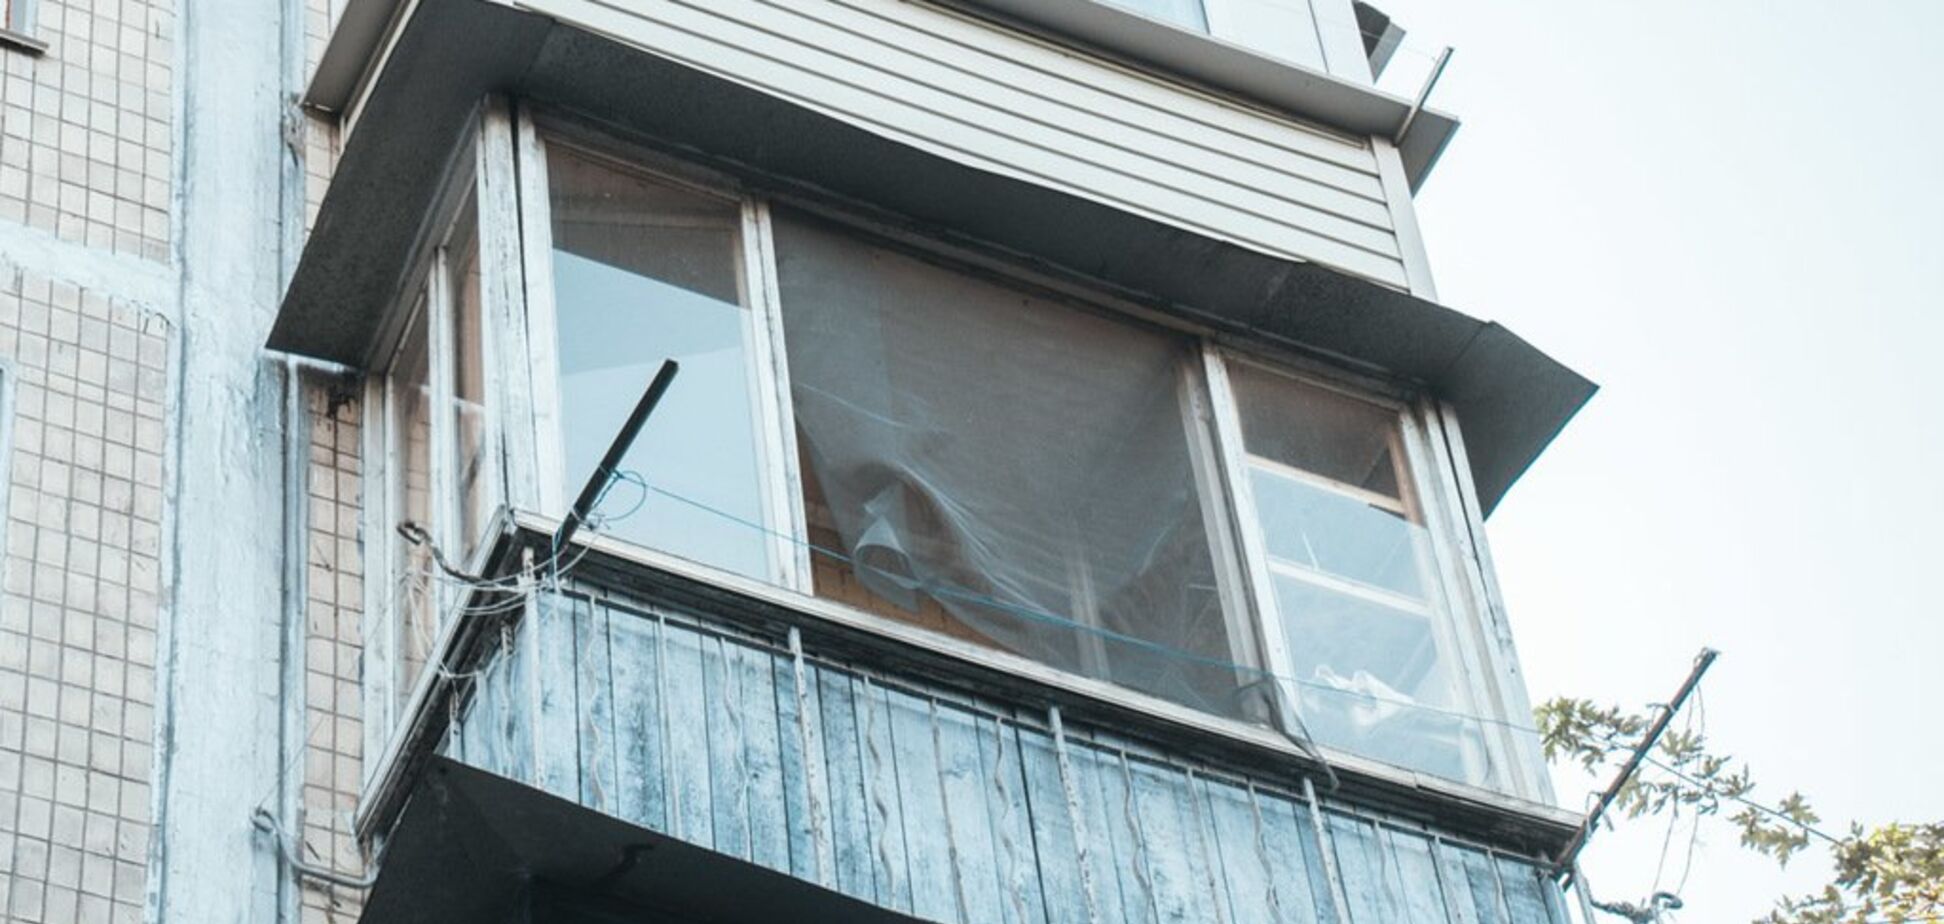  В Киеве с балкона выпал голый мужчина: фото с места событий